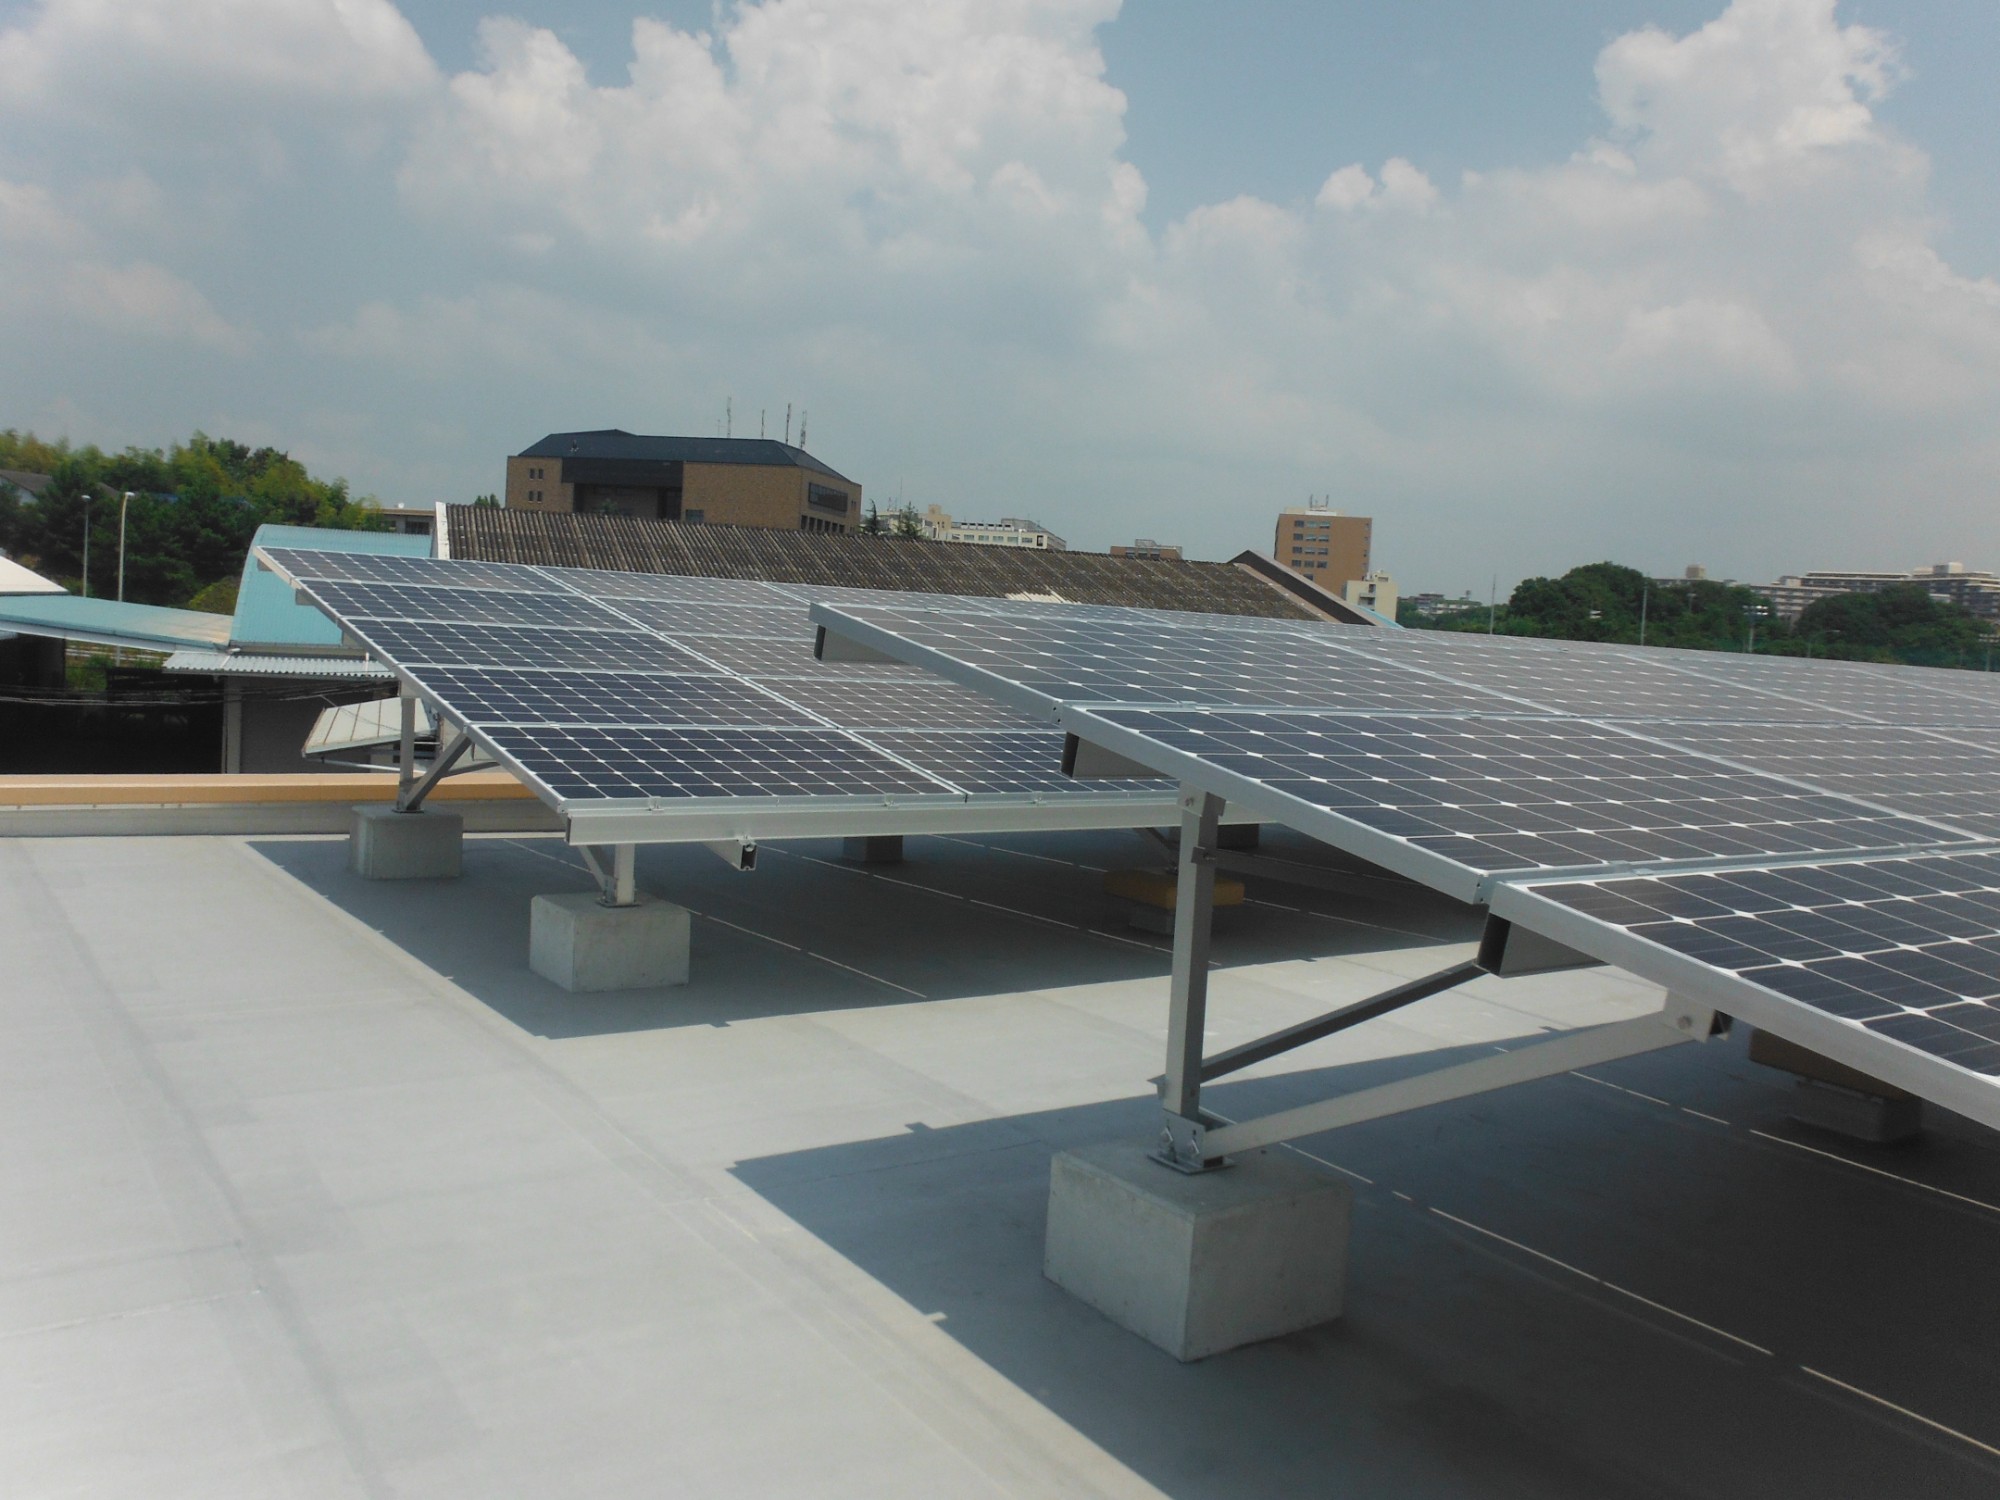 주문 평평한 지붕 태양열 건 드리는 시스템,평평한 지붕 태양열 건 드리는 시스템 가격,평평한 지붕 태양열 건 드리는 시스템 브랜드,평평한 지붕 태양열 건 드리는 시스템 제조업체,평평한 지붕 태양열 건 드리는 시스템 인용,평평한 지붕 태양열 건 드리는 시스템 회사,